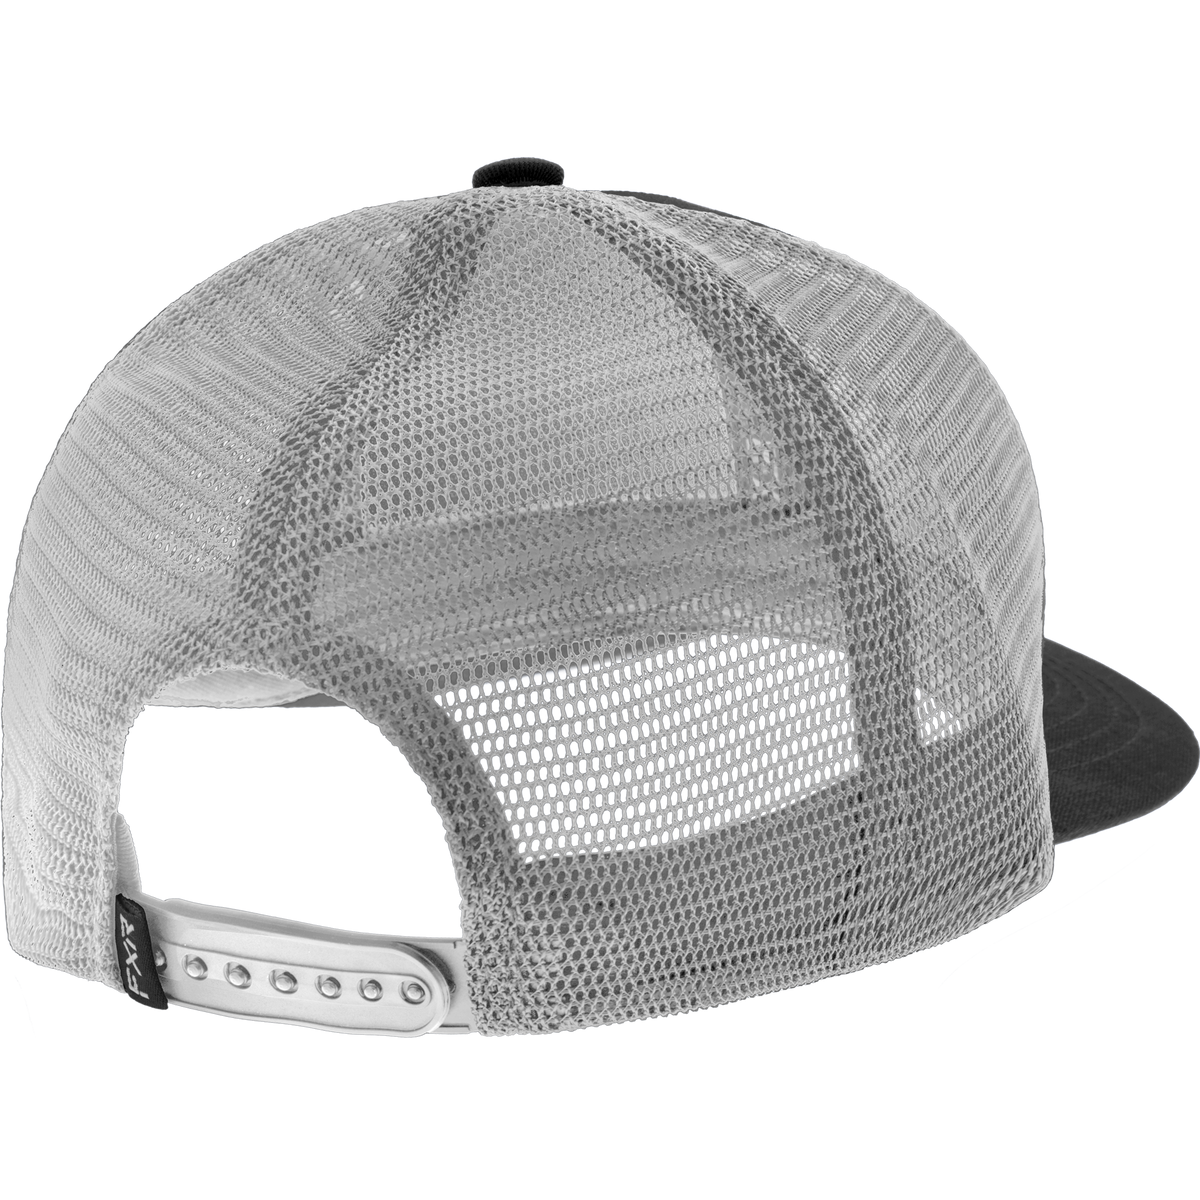 FXR Pro Fish Hat - 2024